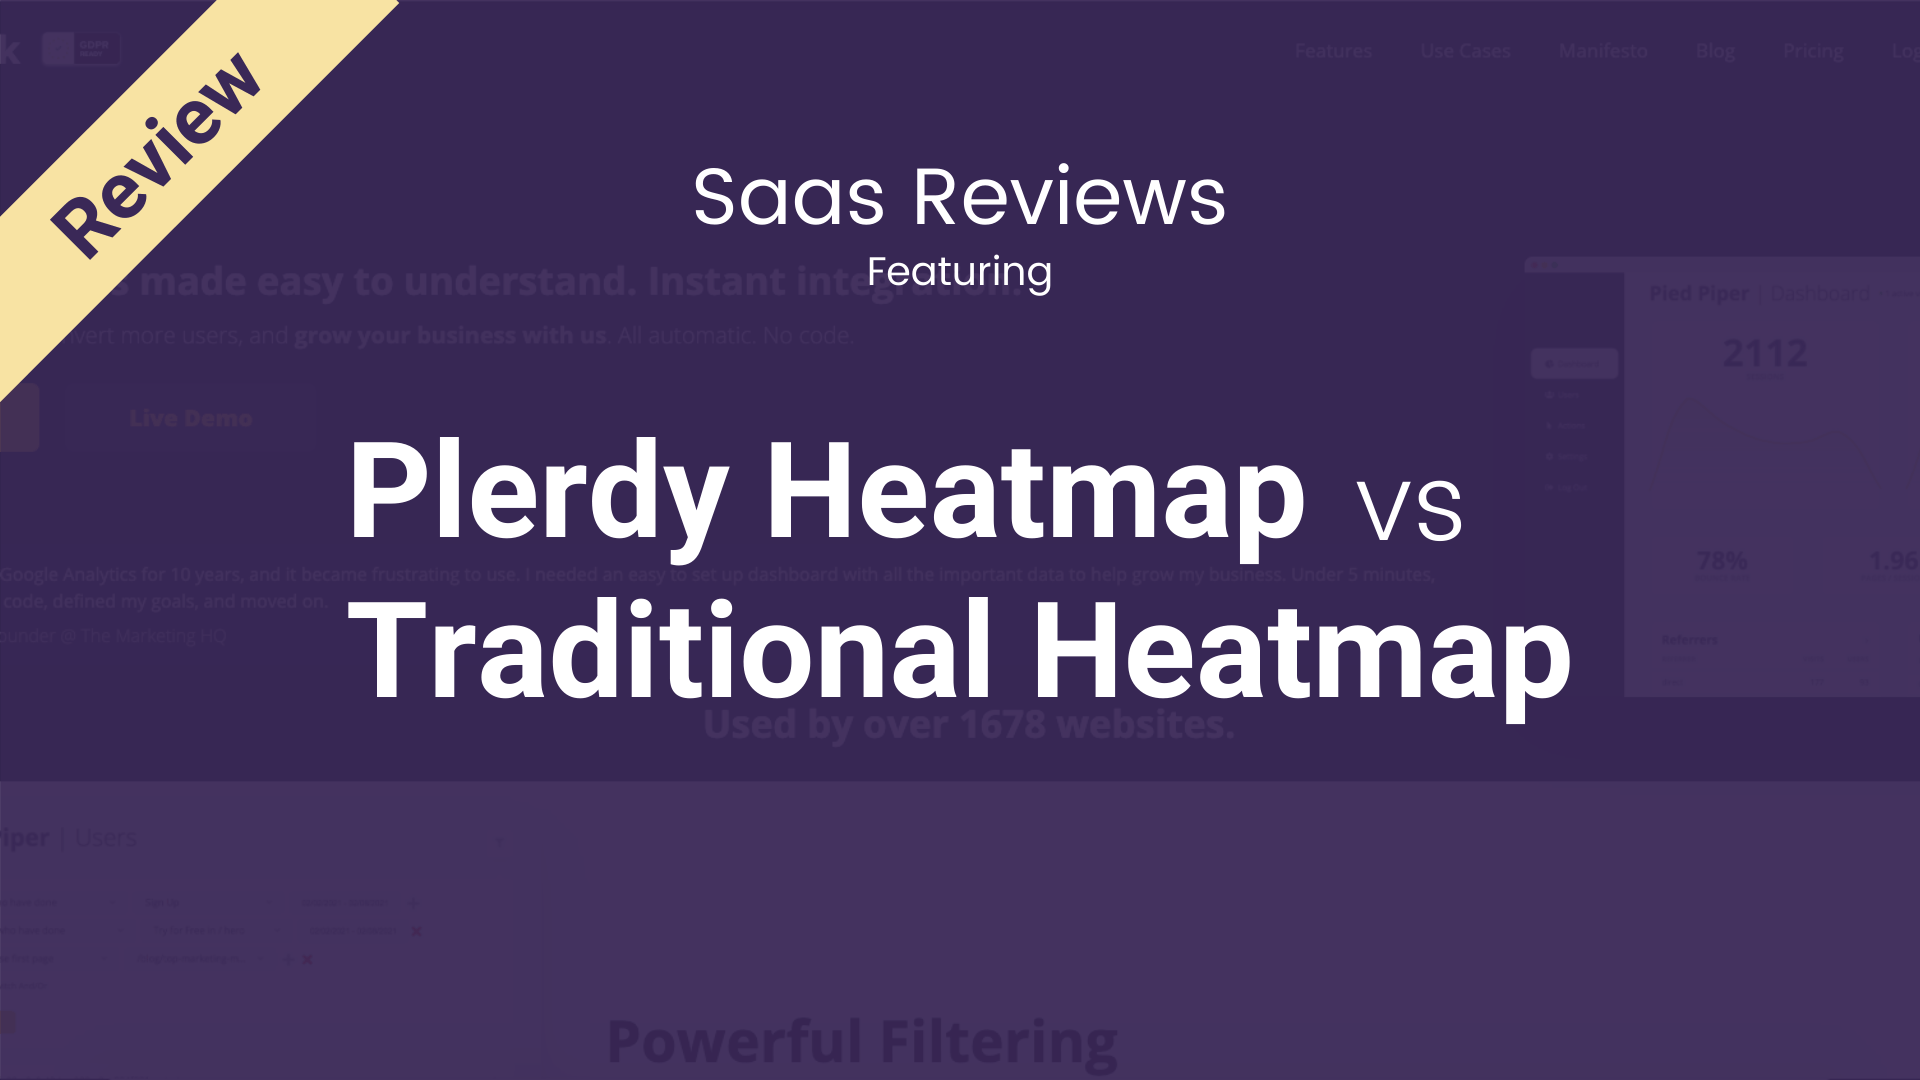 Plerdy’s Heatmap vs Traditional Heatmap